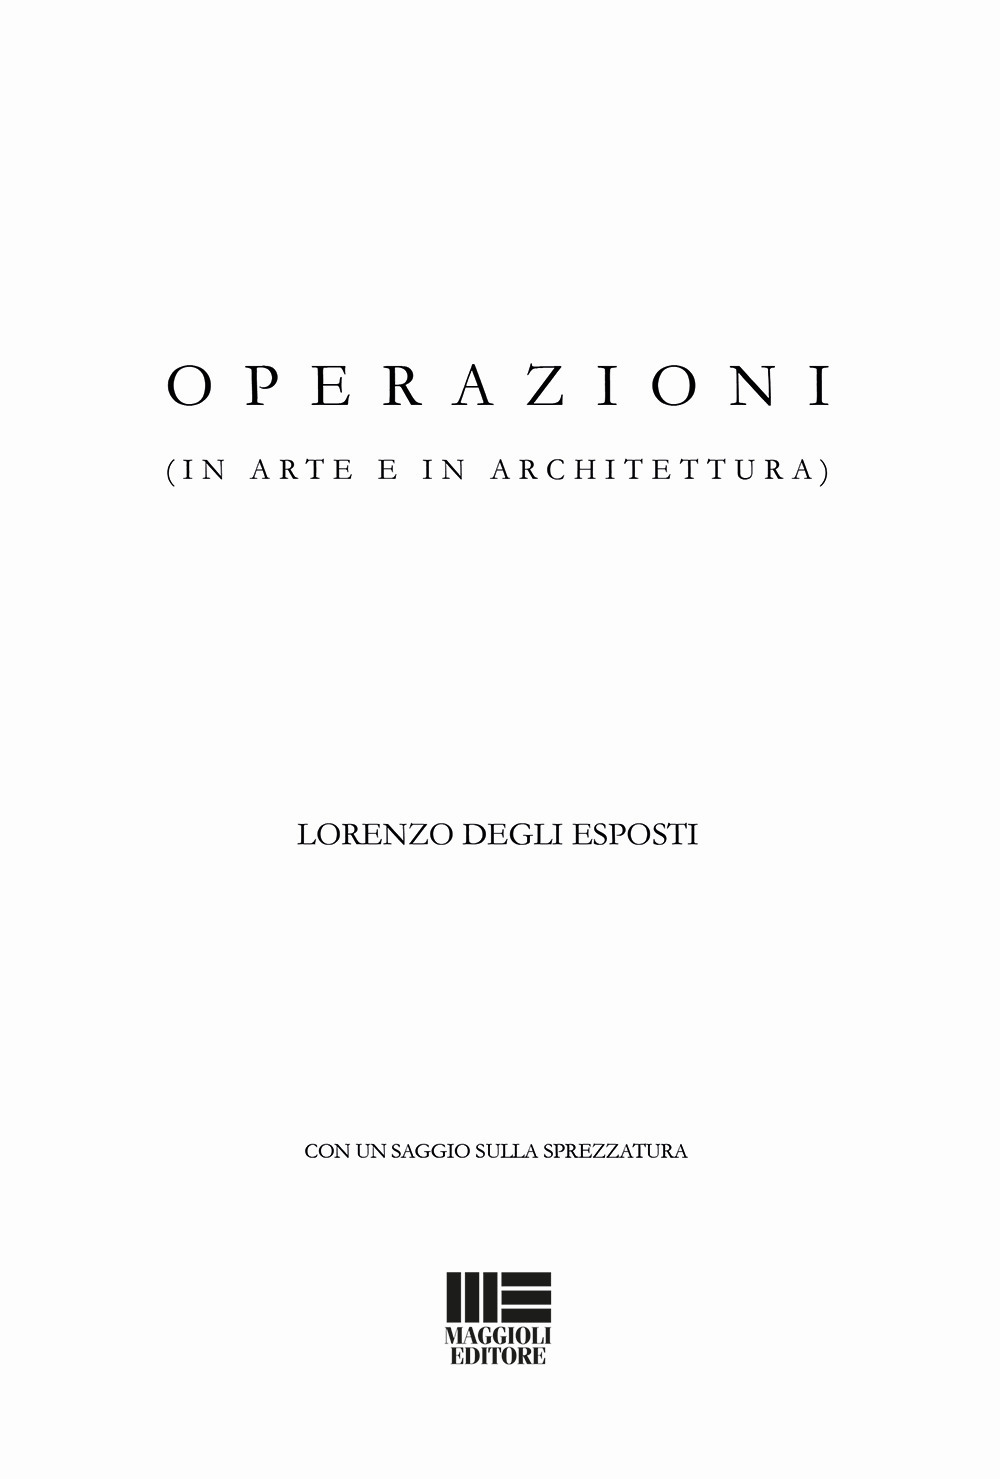 Image of Operazioni (in arte e in architettura)